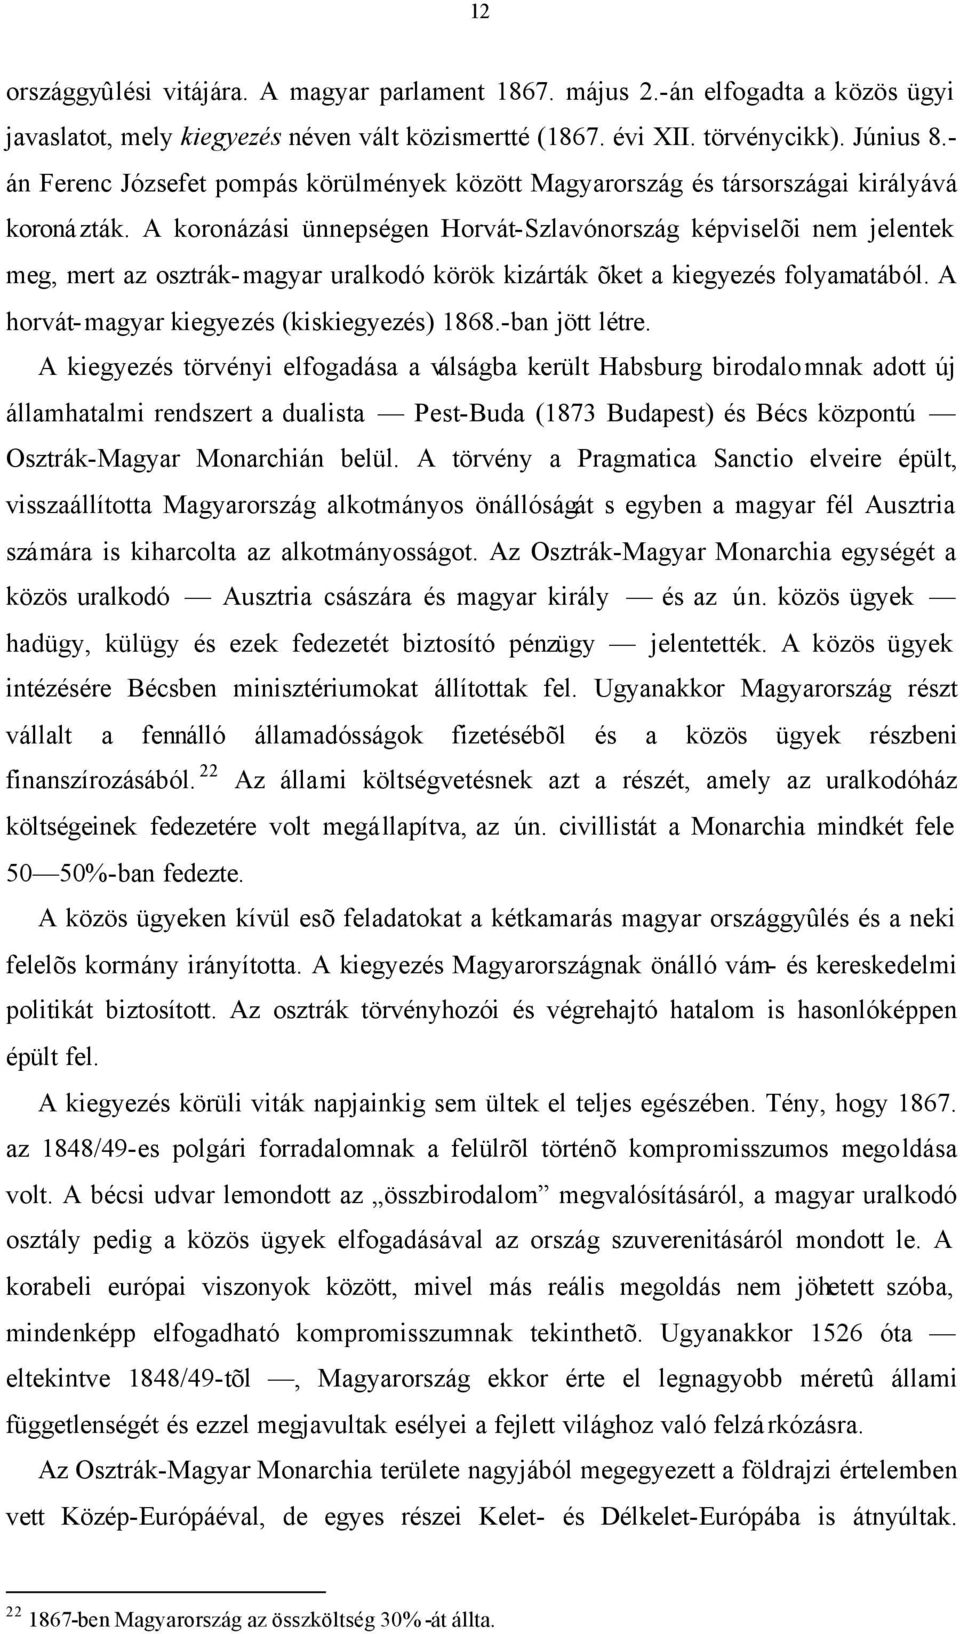 A koronázási ünnepségen Horvát-Szlavónország képviselõi nem jelentek meg, mert az osztrák-magyar uralkodó körök kizárták õket a kiegyezés folyamatából. A horvát-magyar kiegyezés (kiskiegyezés) 1868.